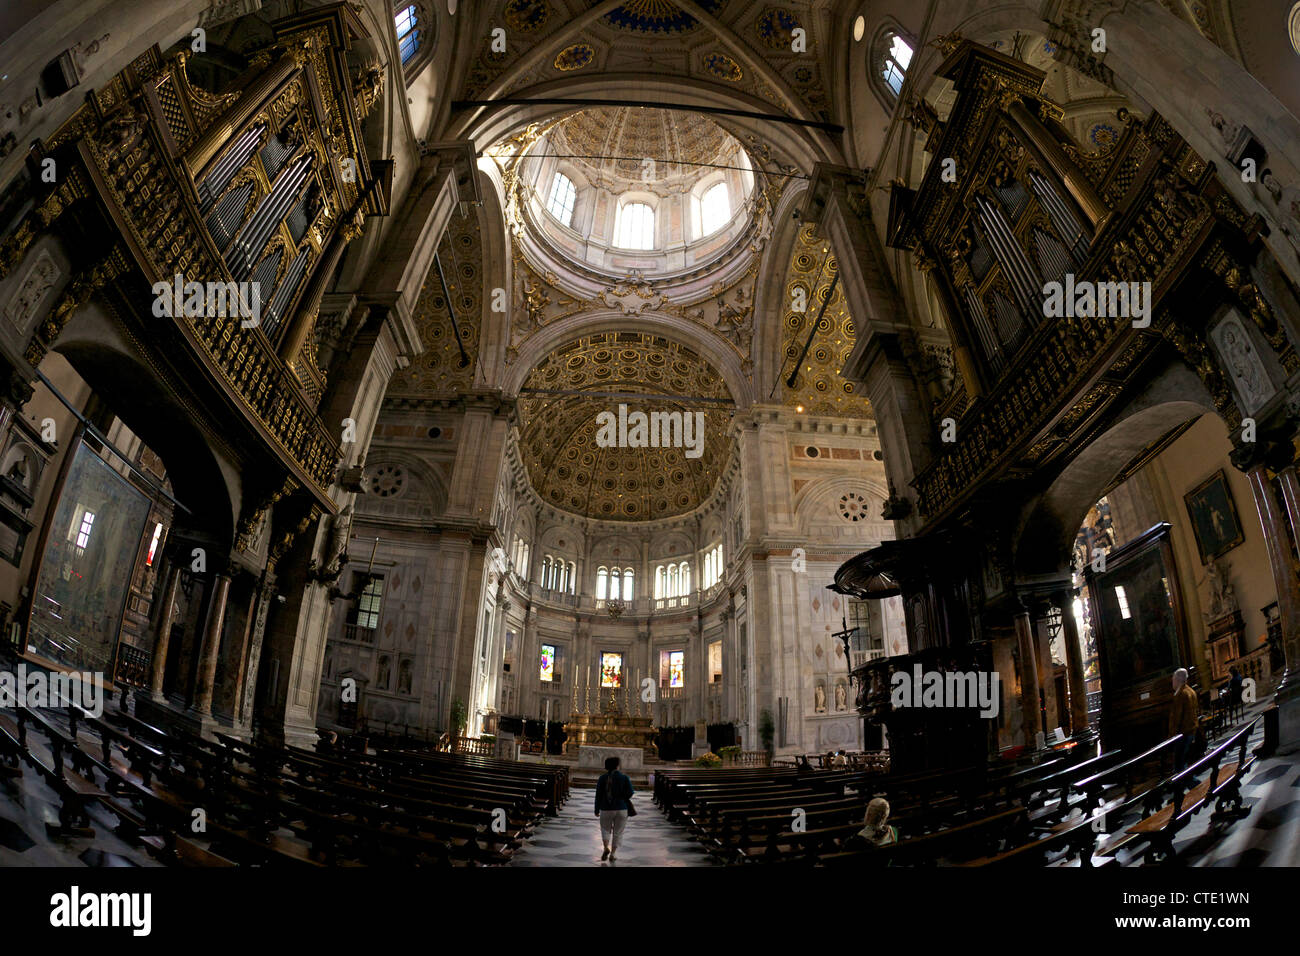 Interior of Como Duomo, city centre, Lake Como, Italy, Europe Stock Photo